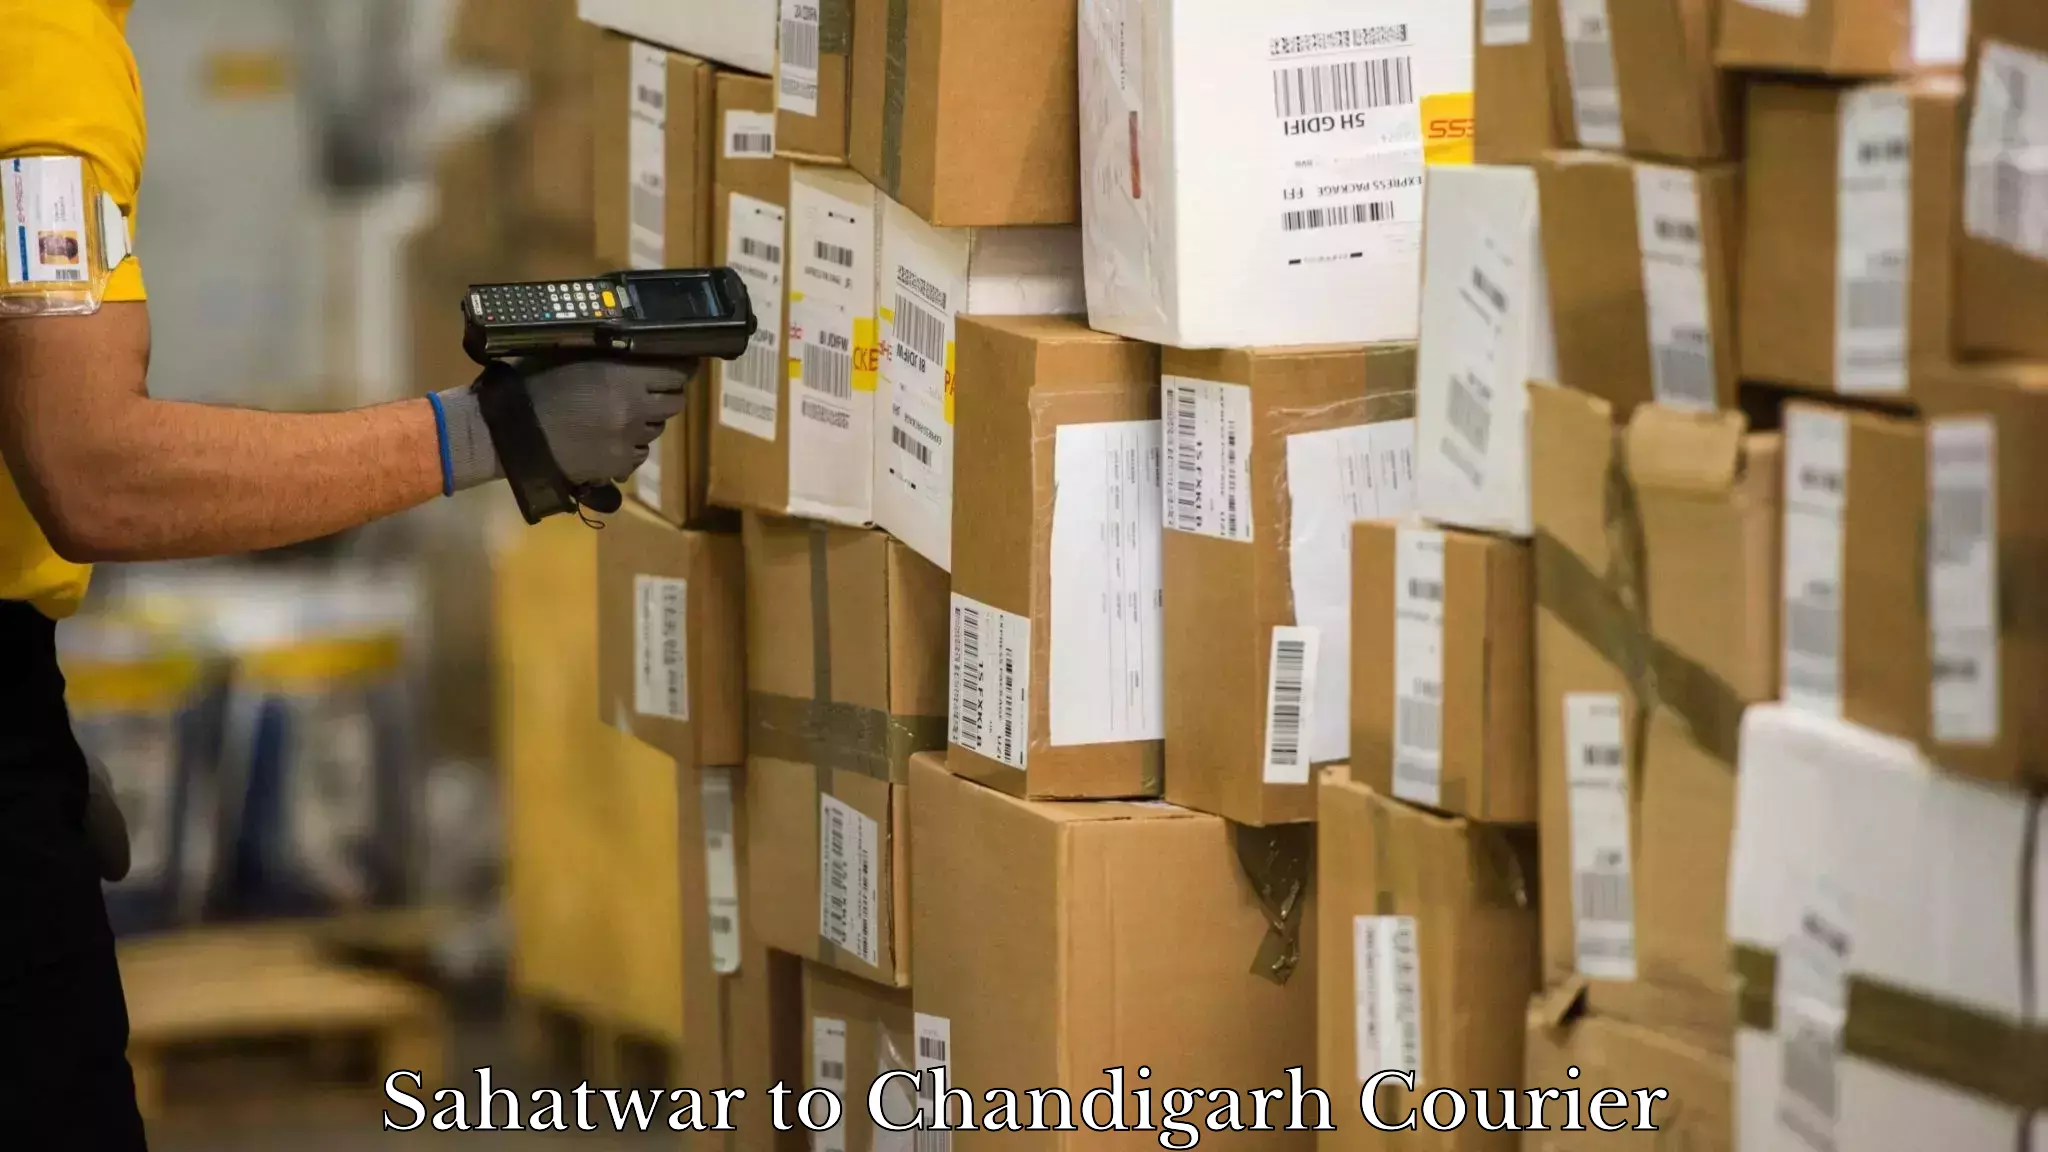 High-performance logistics Sahatwar to Chandigarh